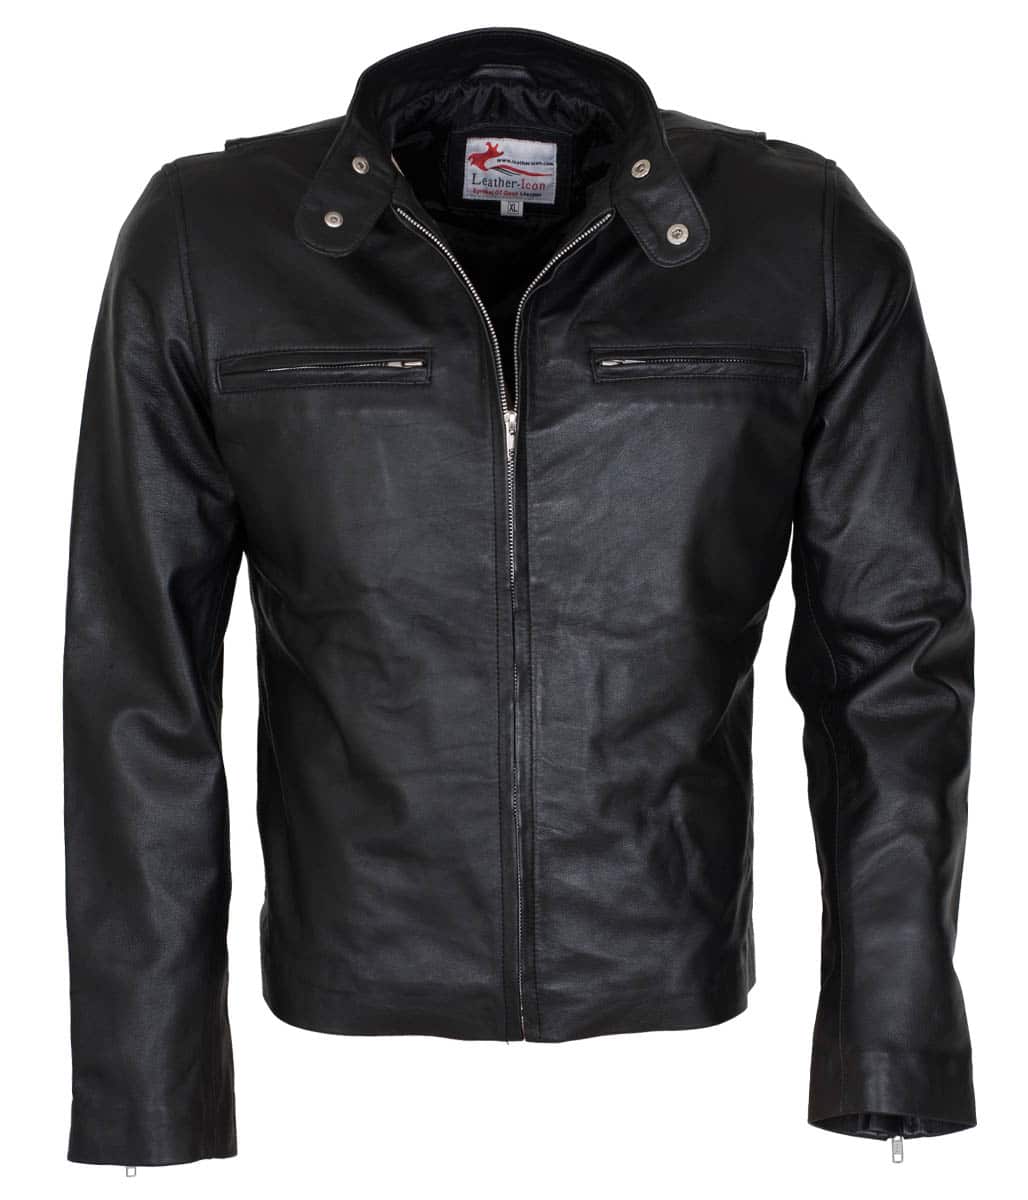 Bradley Cooper Adam Jones Black Leather Jacket